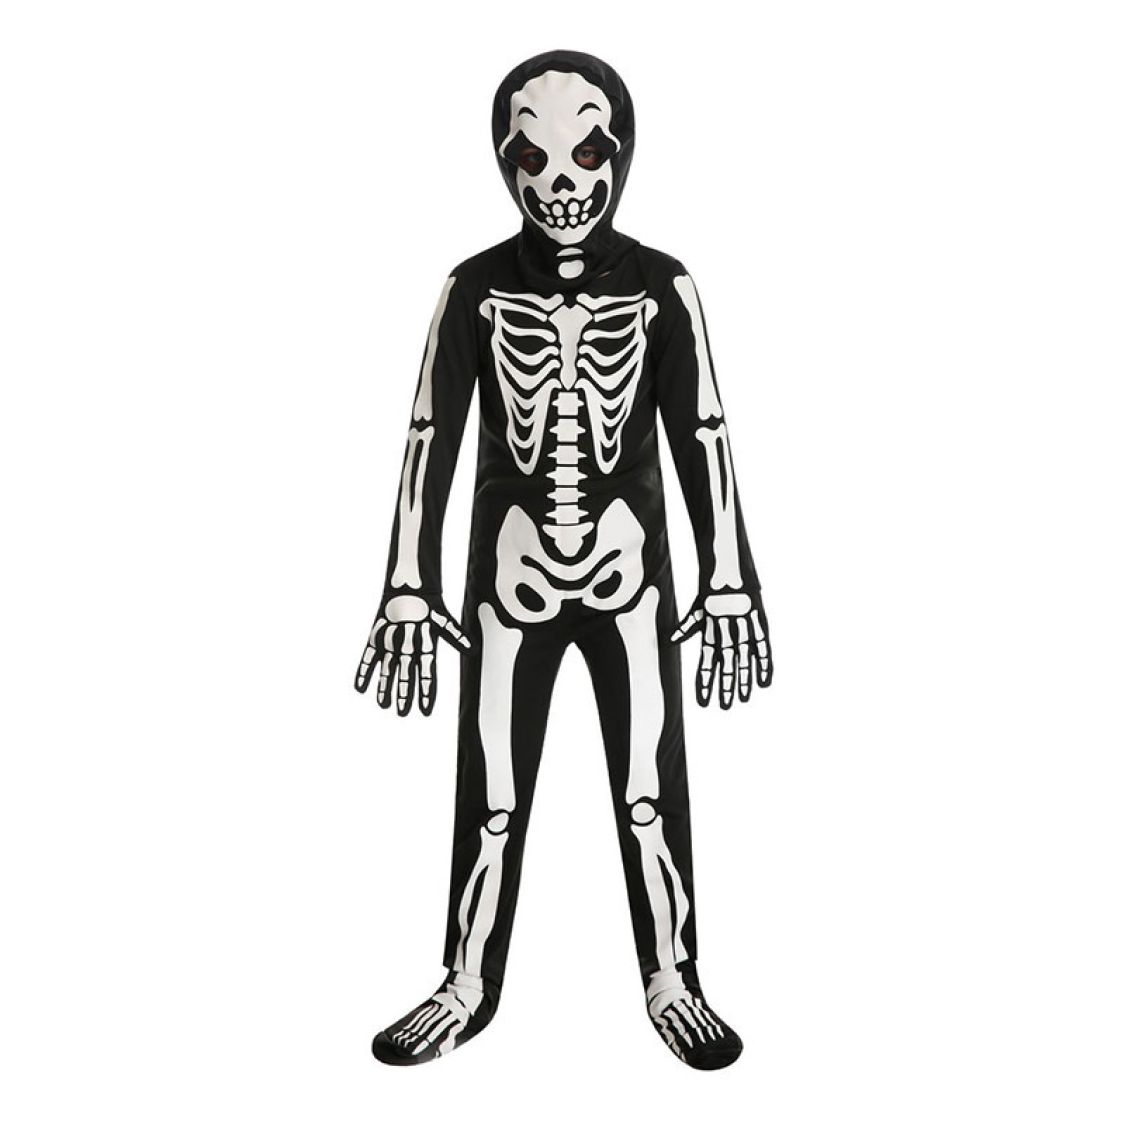 https://www.ballons-a-gogo.com/images/cache/1125x1125/11417/costume-squelette-masque-enfant.jpg